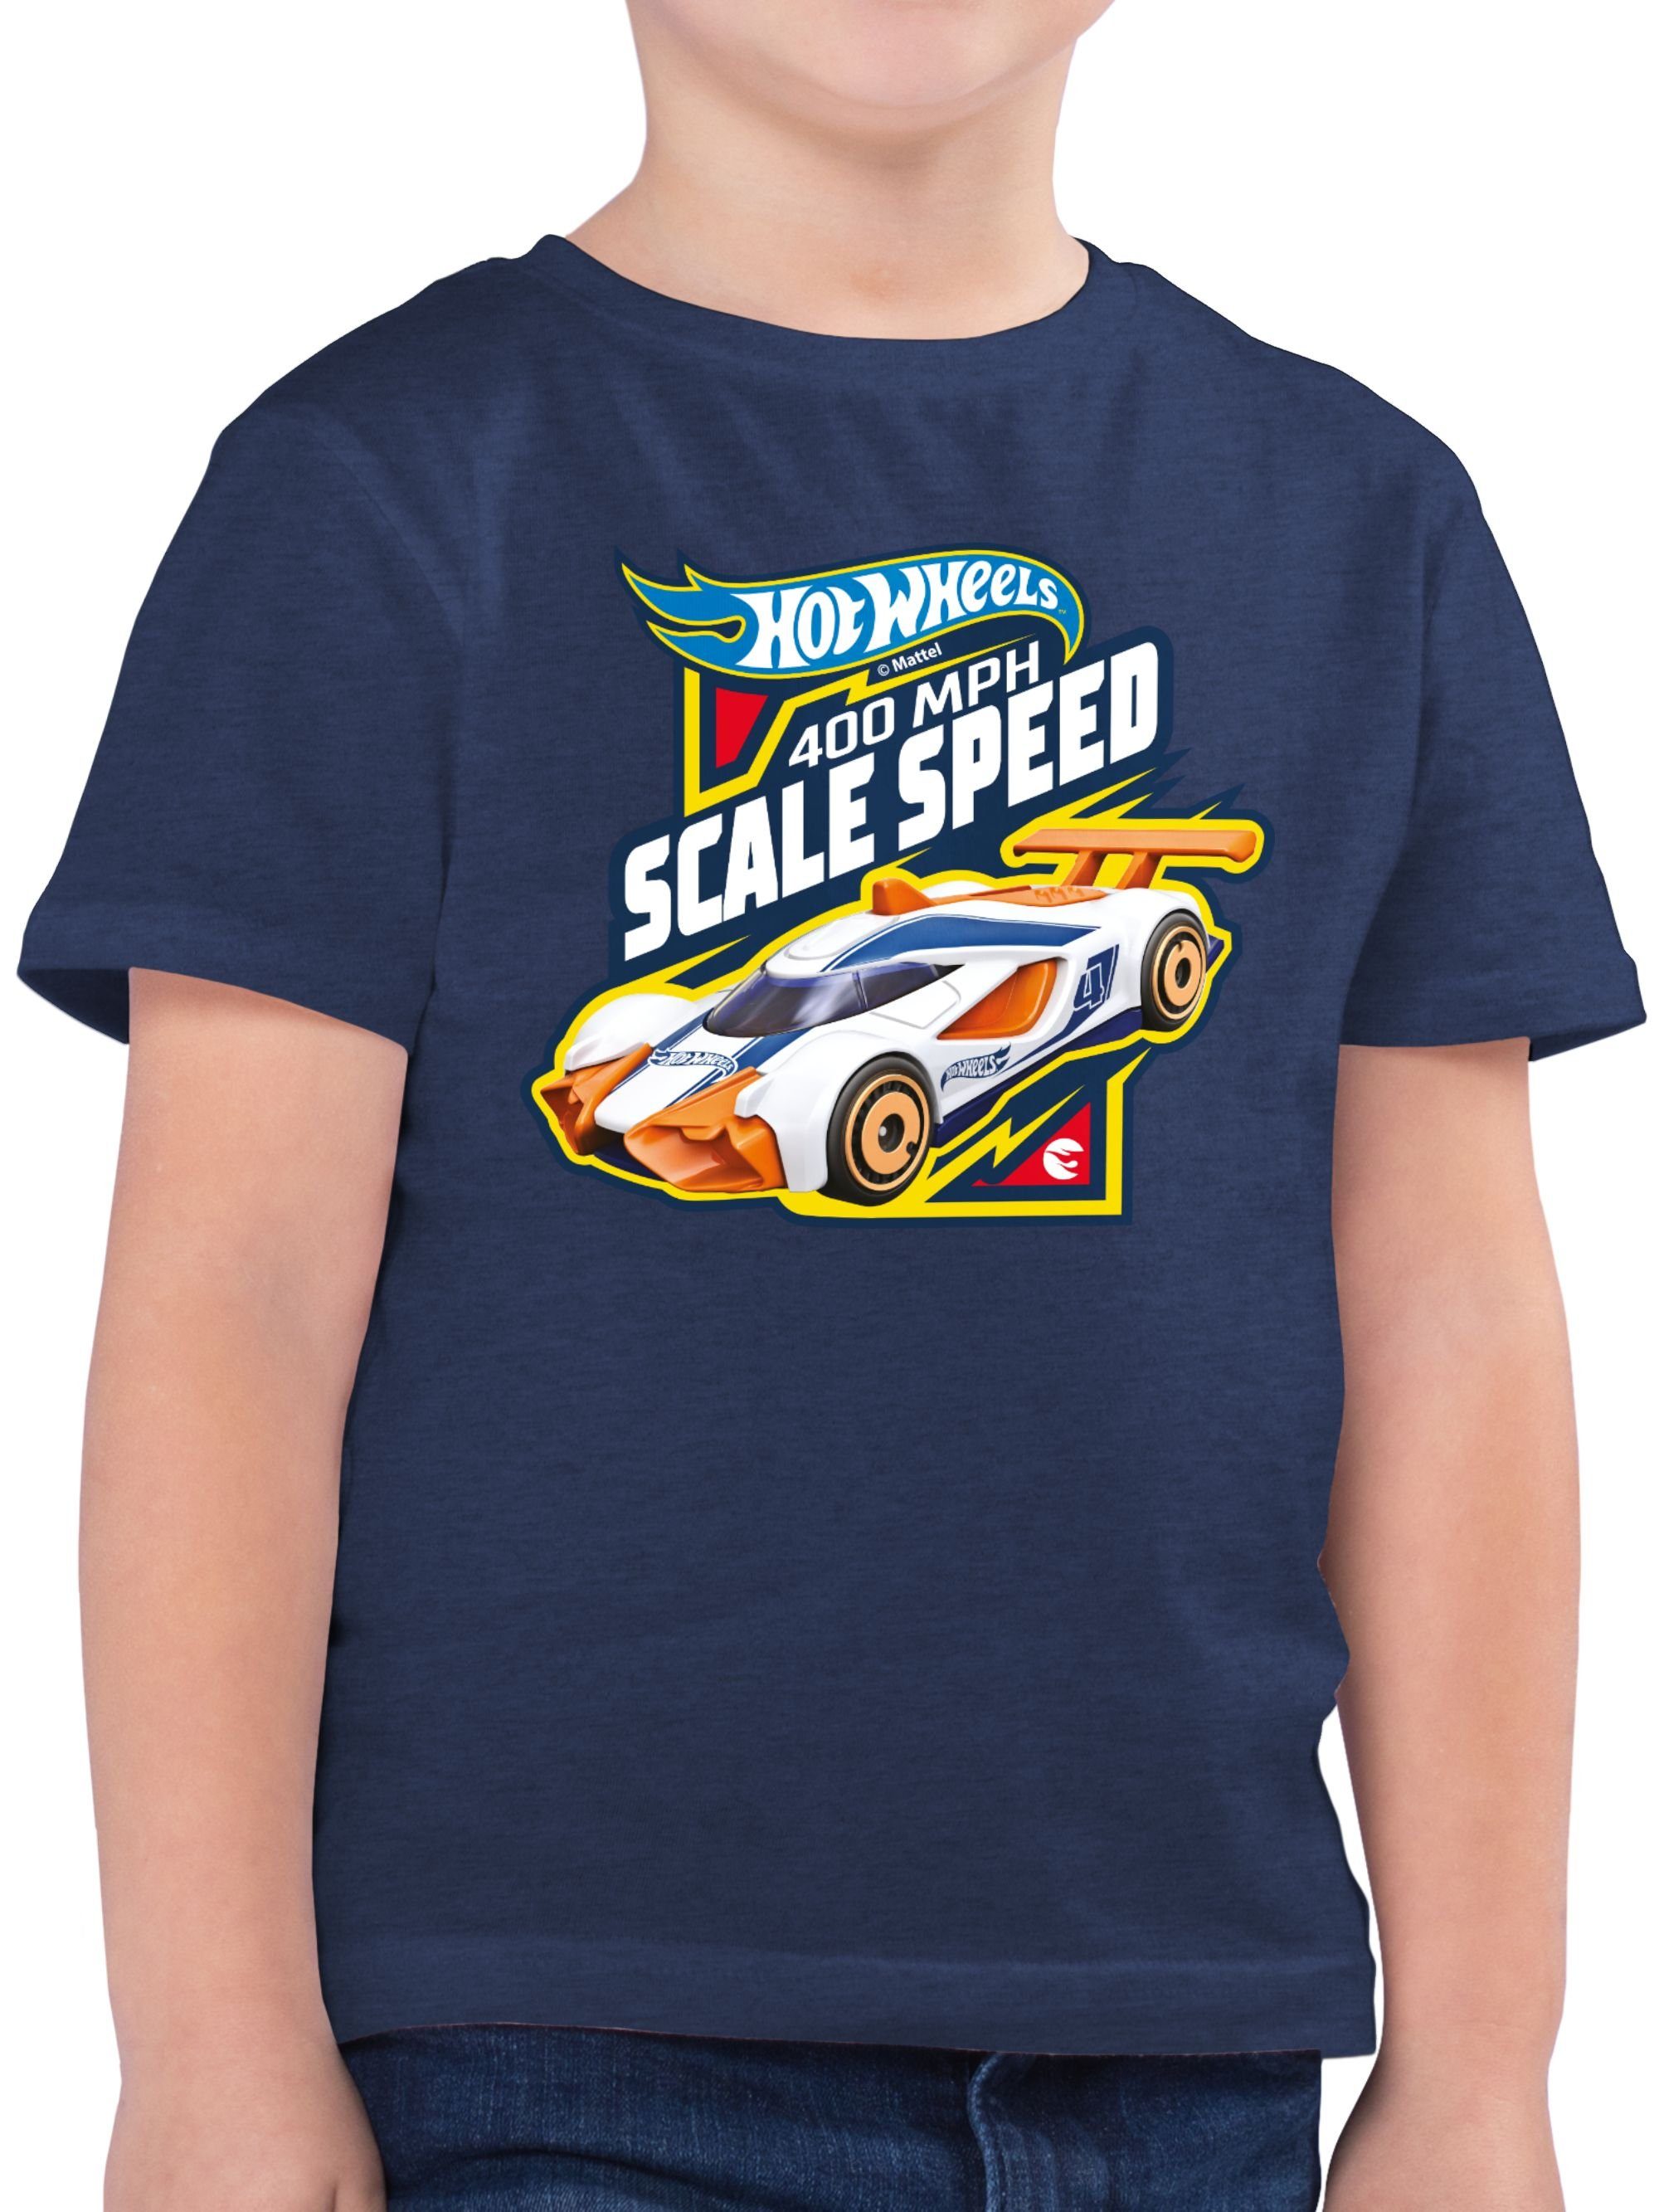 Shirtracer T-Shirt 400MPH Scale Speed Hot Wheels Jungen 01 Dunkelblau Meliert